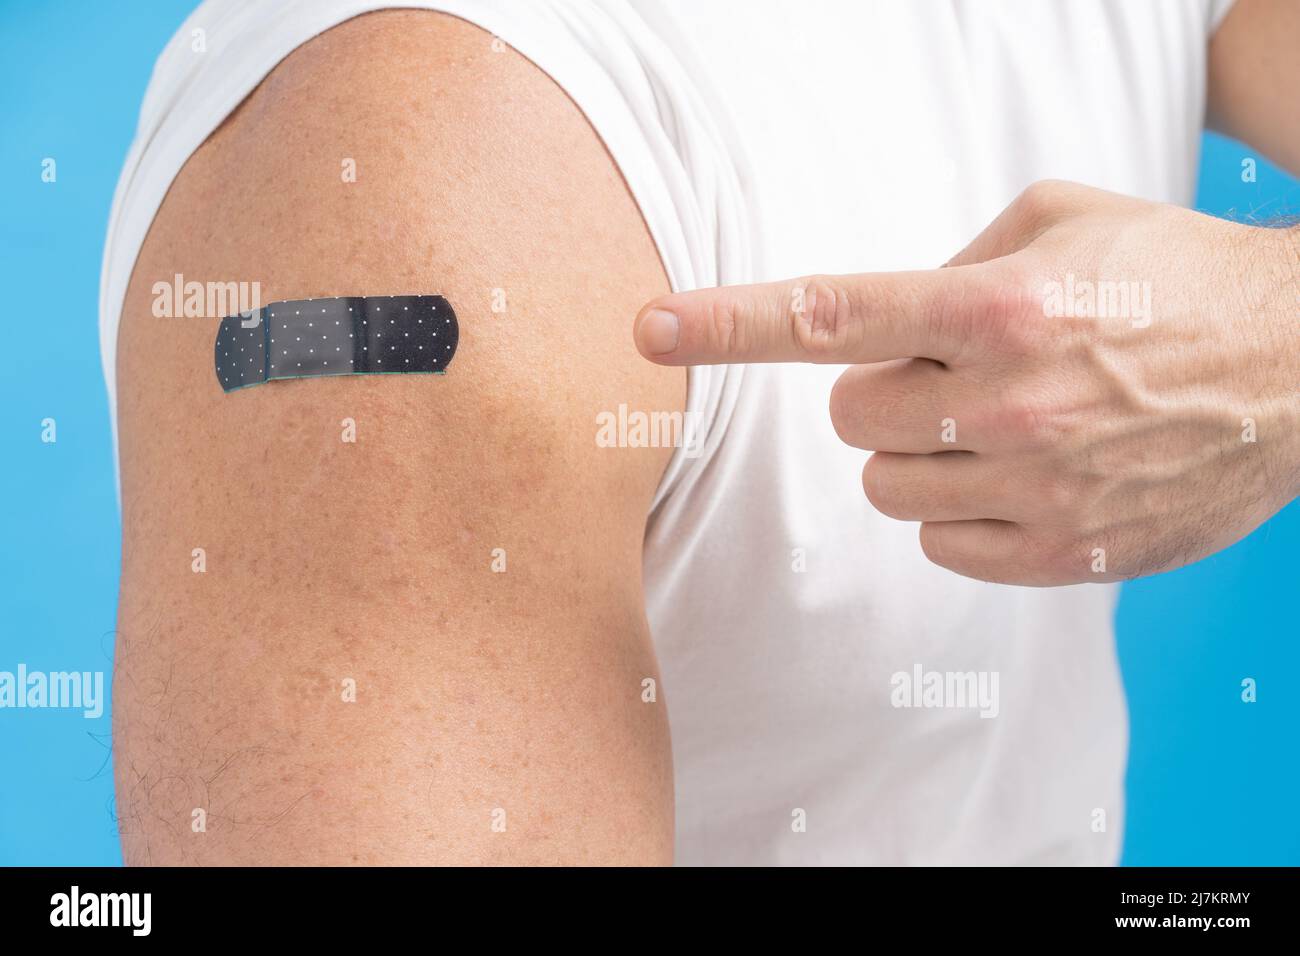 Primo piano un uomo che punta il dito sulla spalla con un aiuto di banda su di esso dopo aver ricevuto il vaccino Covid-19. Vaccino contro COVID-19 o coronavirus. Invecchiamento della pelle maschile. Pelle giusta uomini. Concetto di assistenza sanitaria. Foto Stock